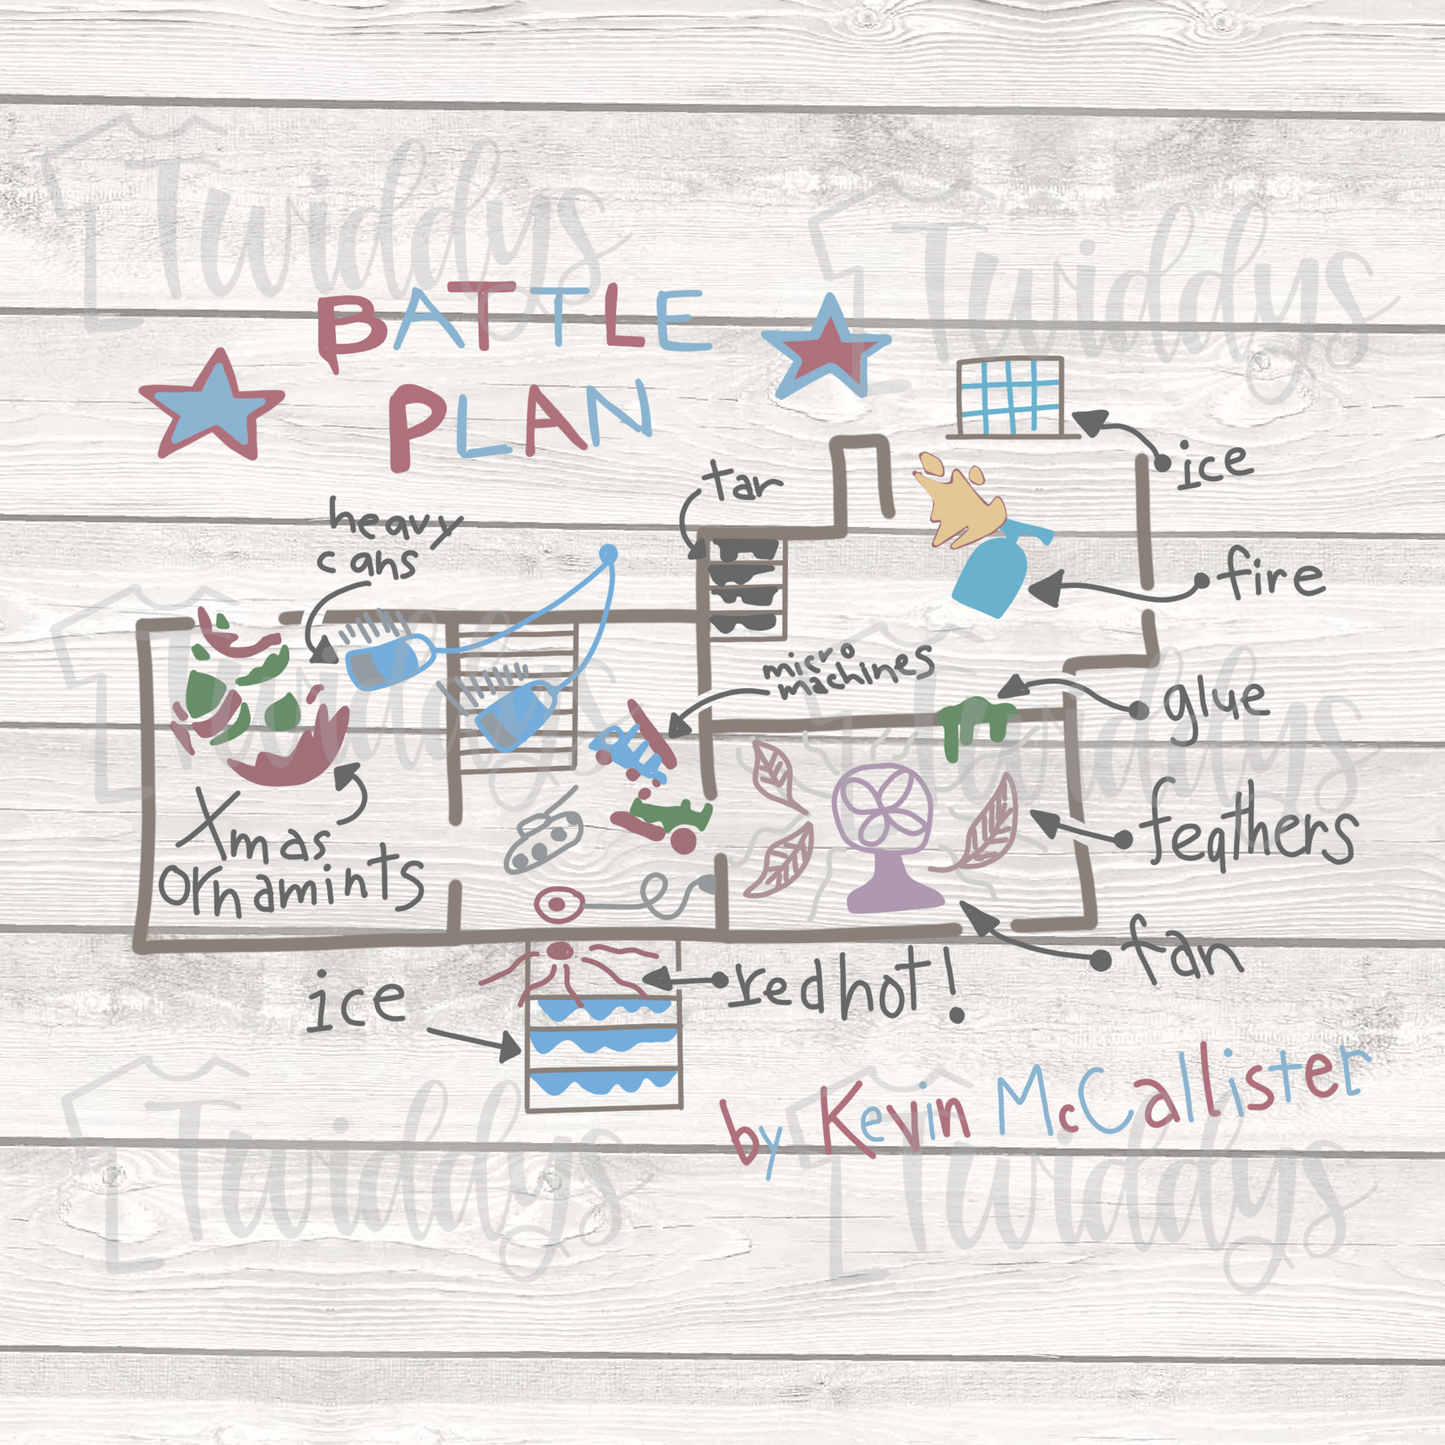 Kevin’s Battle Plan Digital Download